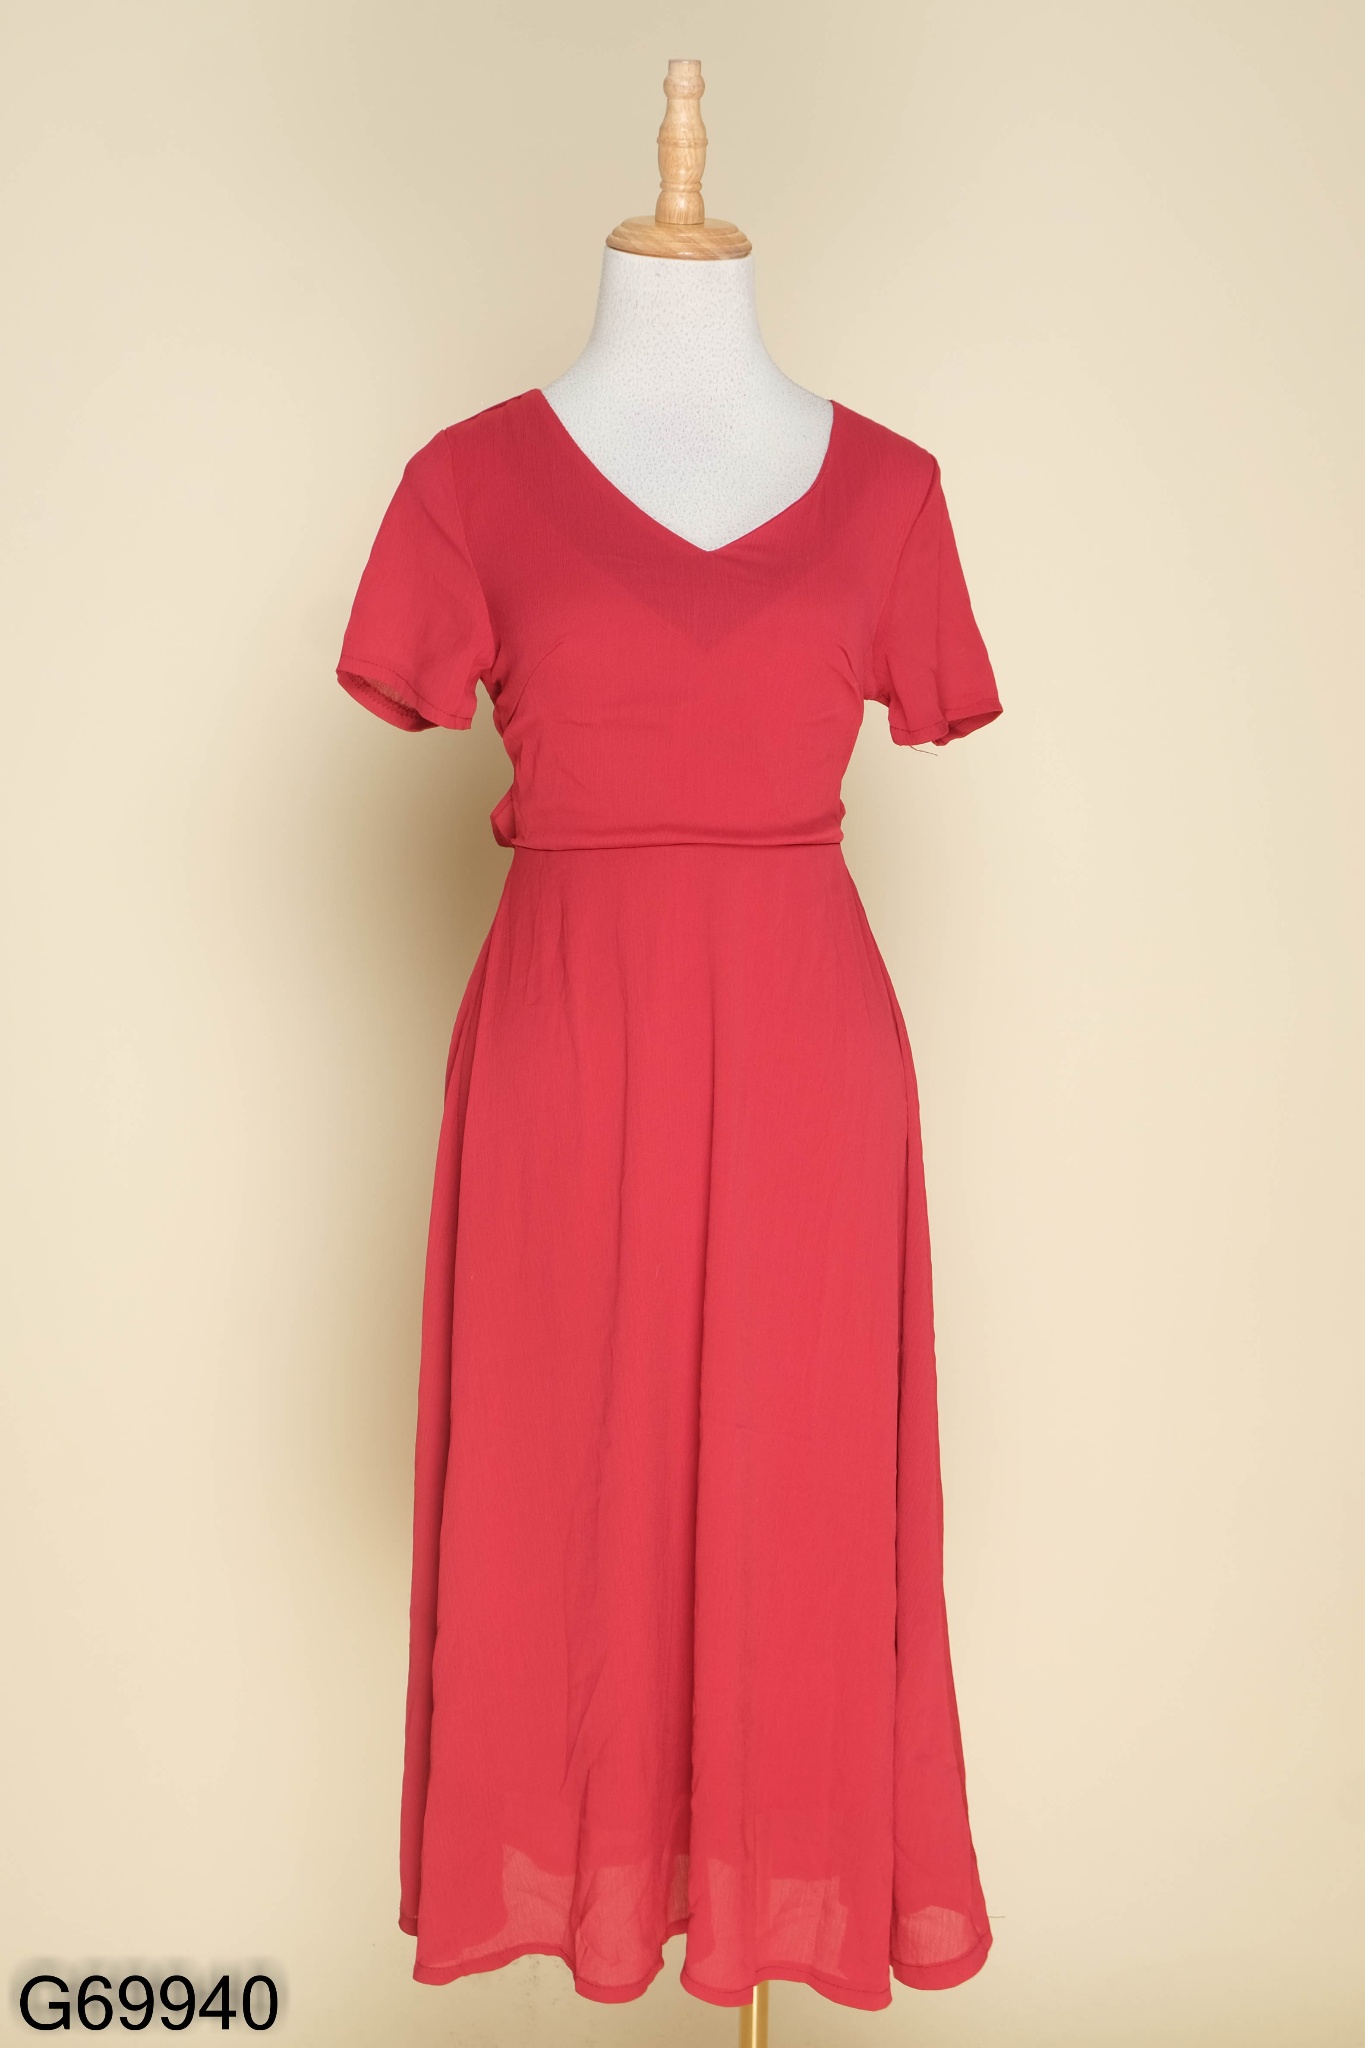 Váy Đỏ Tay Lỡ Xếp Ly Ngực Sang Trọng, Đầm Đỏ Dự Tiệc Dáng Xòe Dài Chất  Cotton Lạnh Đi Tiệc Sang Chảnh - Tìm Voucher